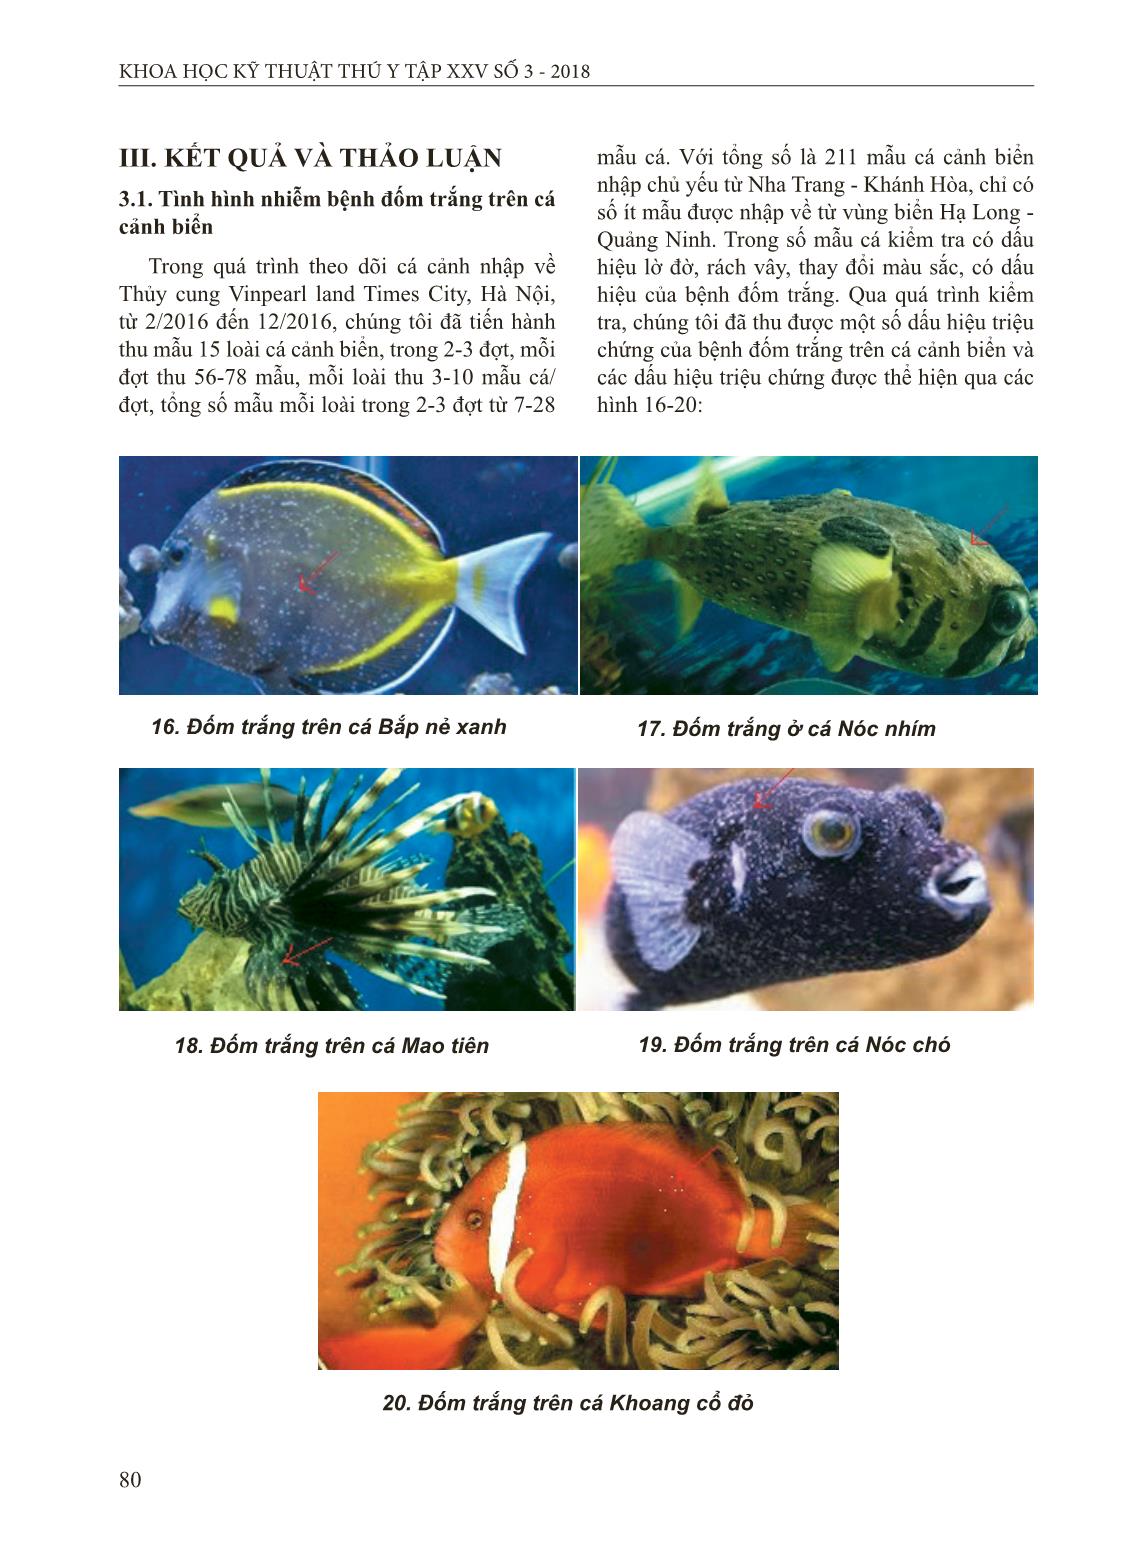 Nghiên cứu bệnh đốm trắng ở cá cảnh biển trang 5